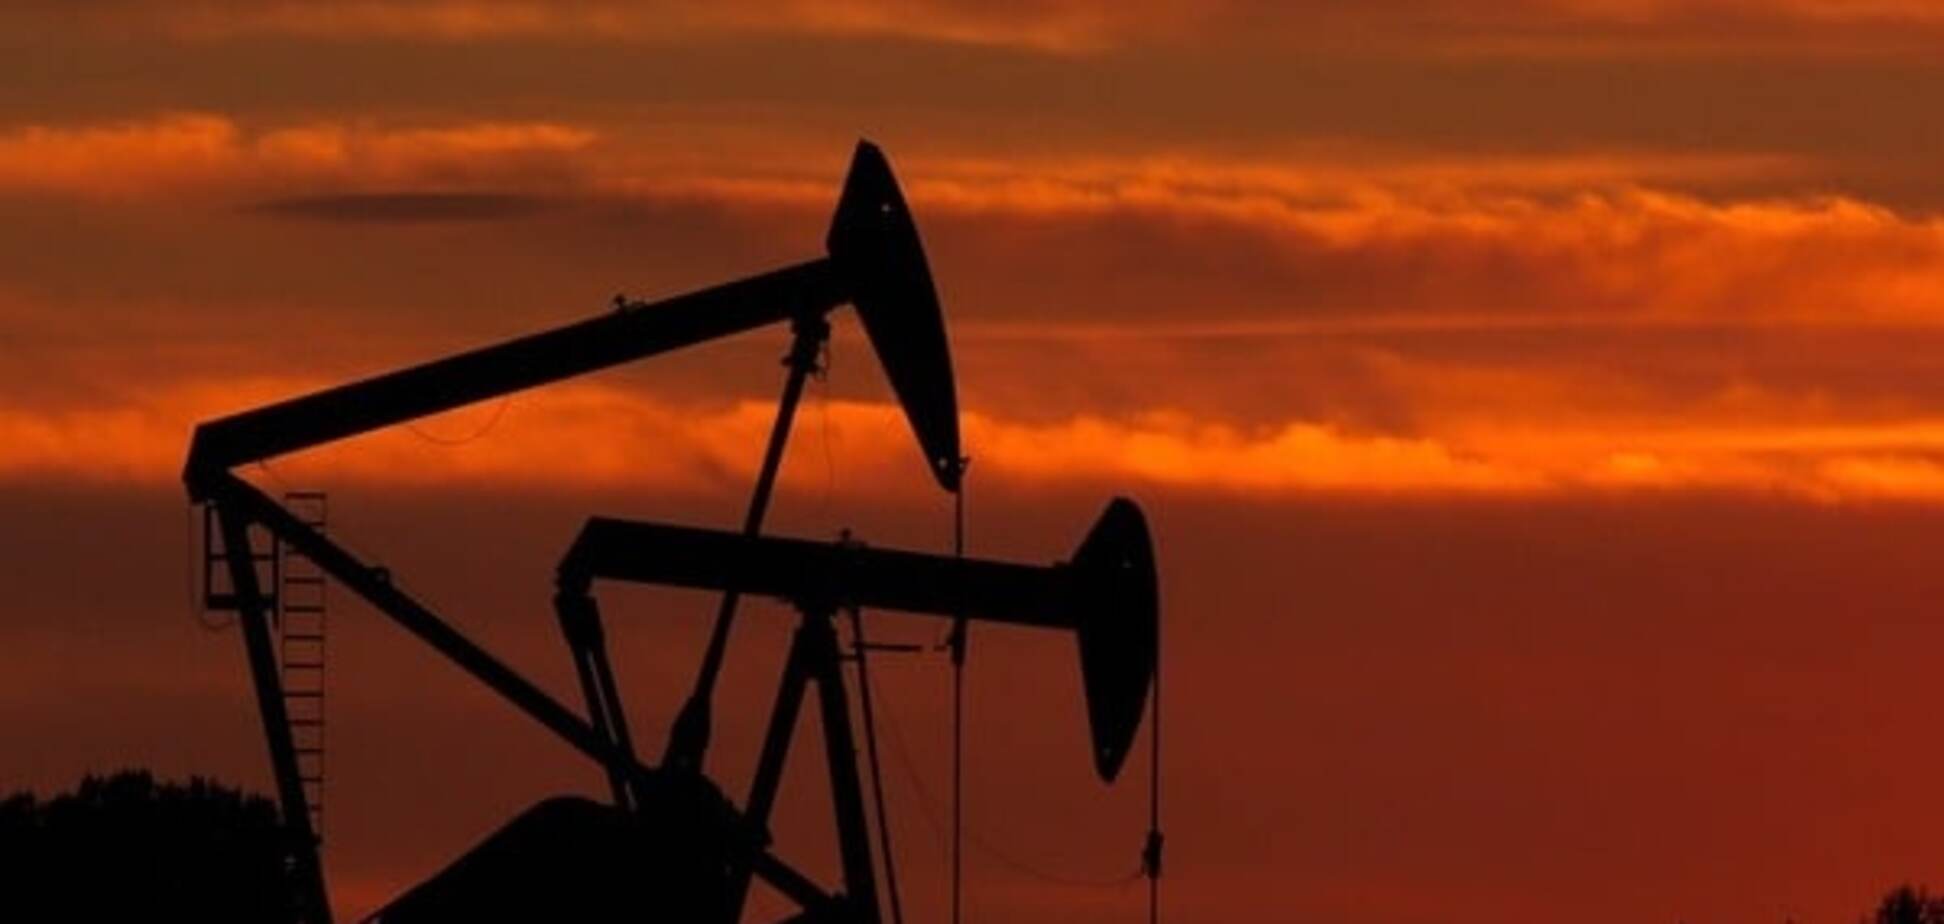 Події на двох континентах обвалили ціни на нафту